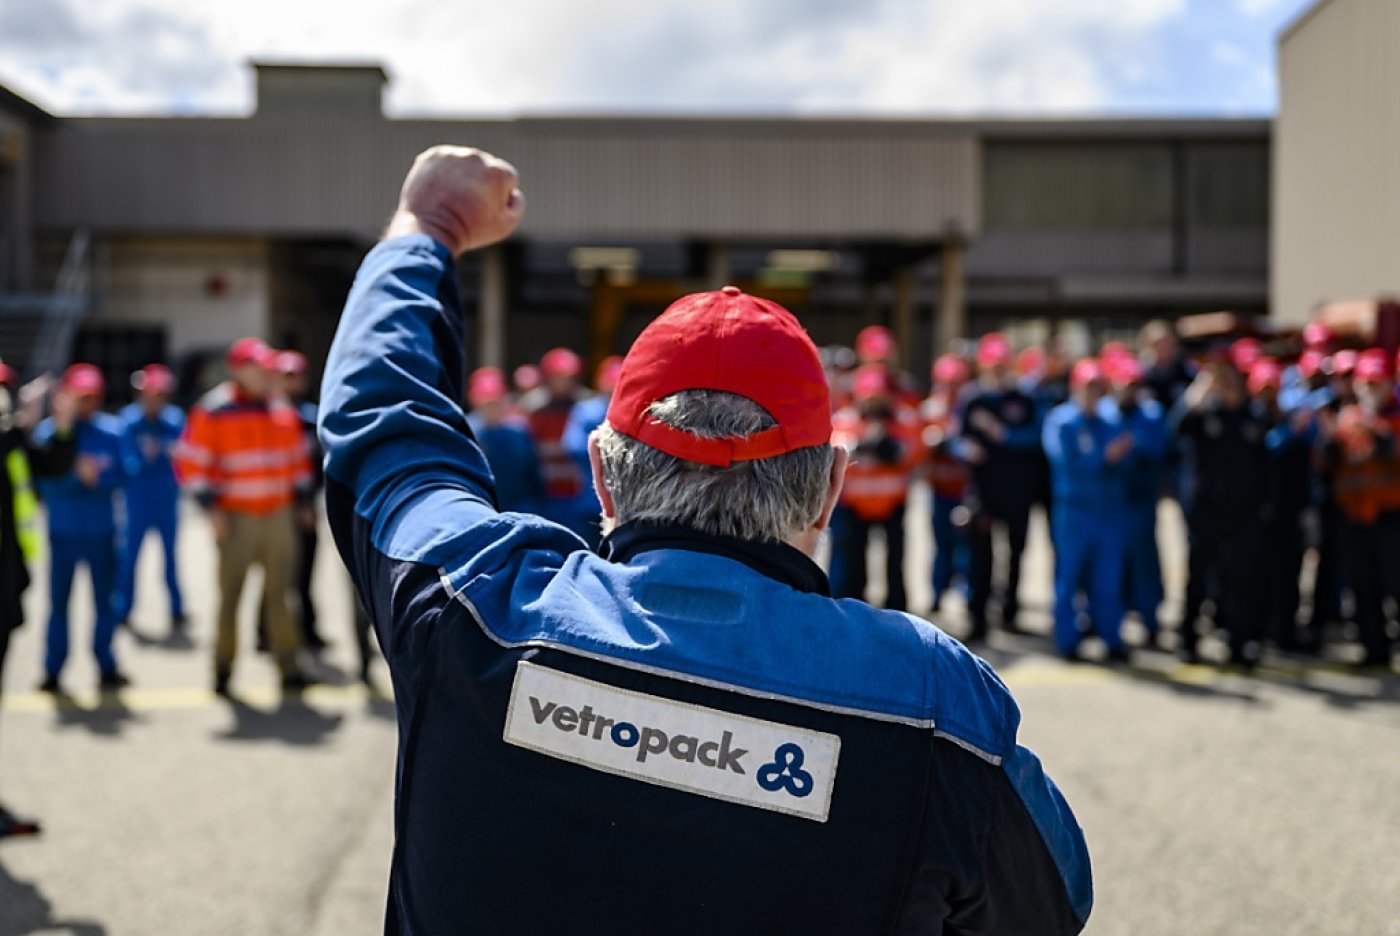 Employés et syndicats se sont mobilisés encore une fois jeudi devant Vetropack à St-Prex. KEYSTONE